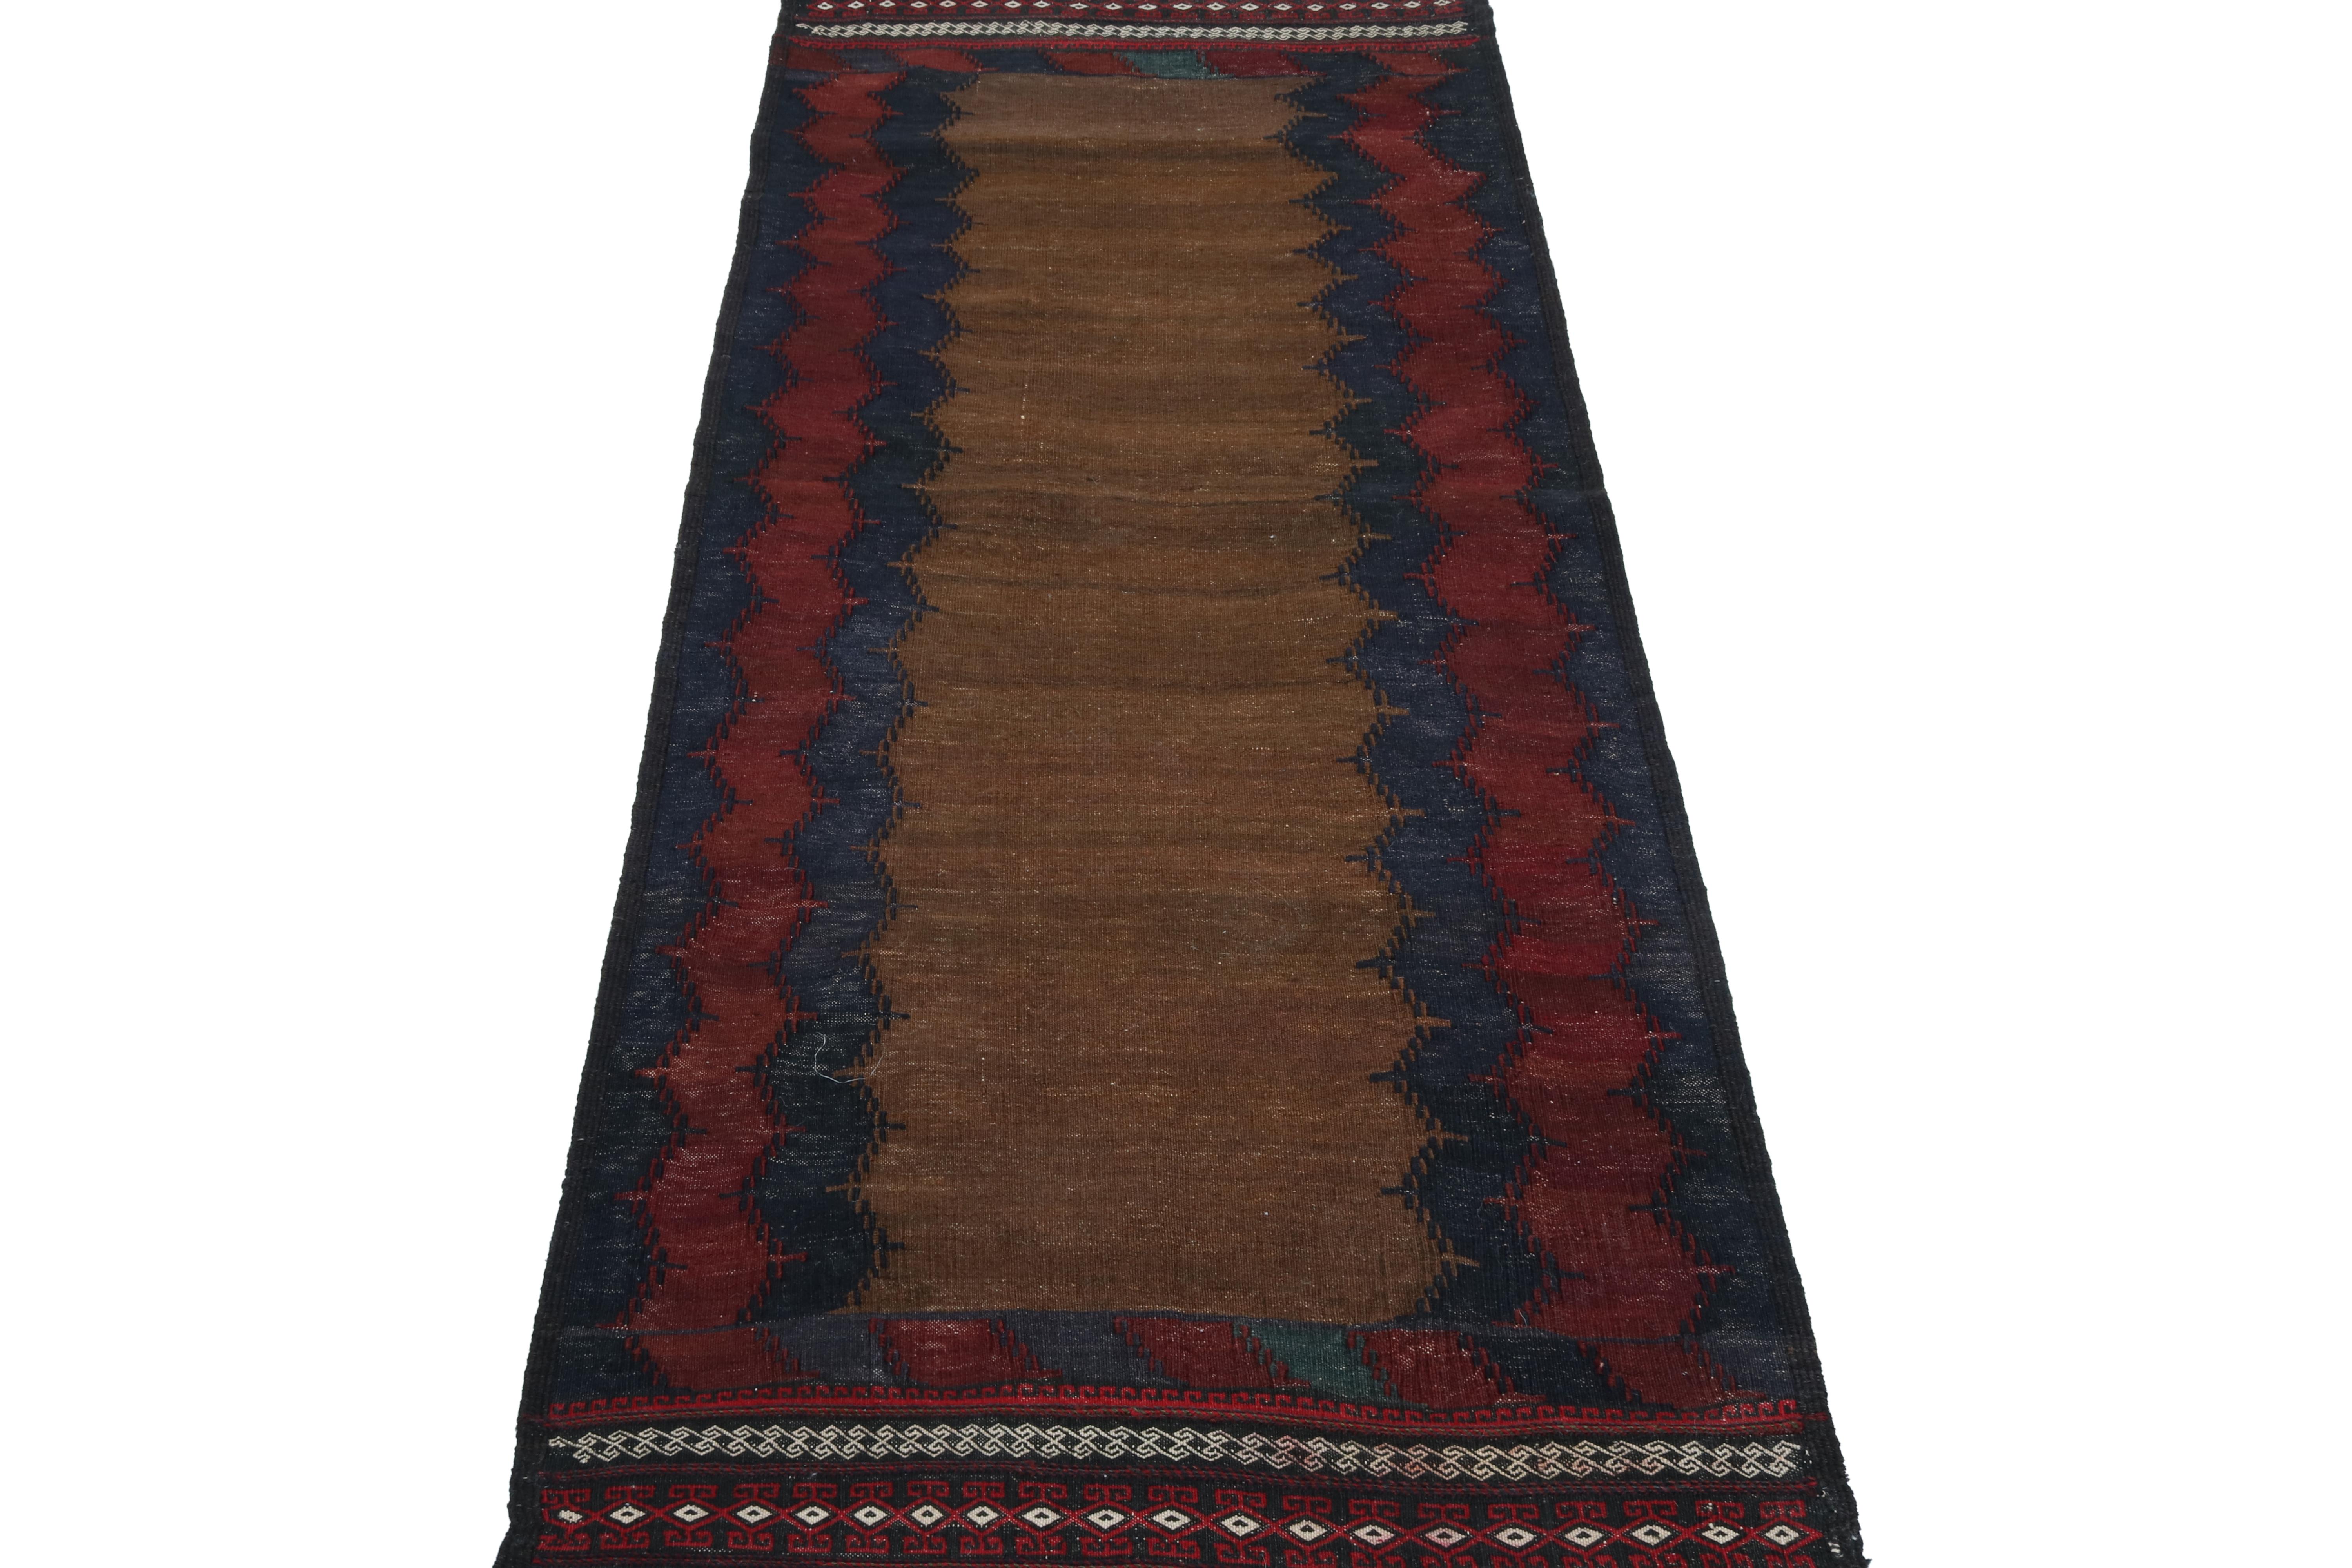 Diese Vintage 2x5 persischen Kelim ist ein Stammes-Sofreh-Teppich handgewebt in Wolle ca. 1970-1980.

Weiter zum Design: 

Sofreh-Kilims wie dieses Stück sind bekannt für ihre minimalistischen Muster mit leuchtenden Farben und haltbaren Körpern.